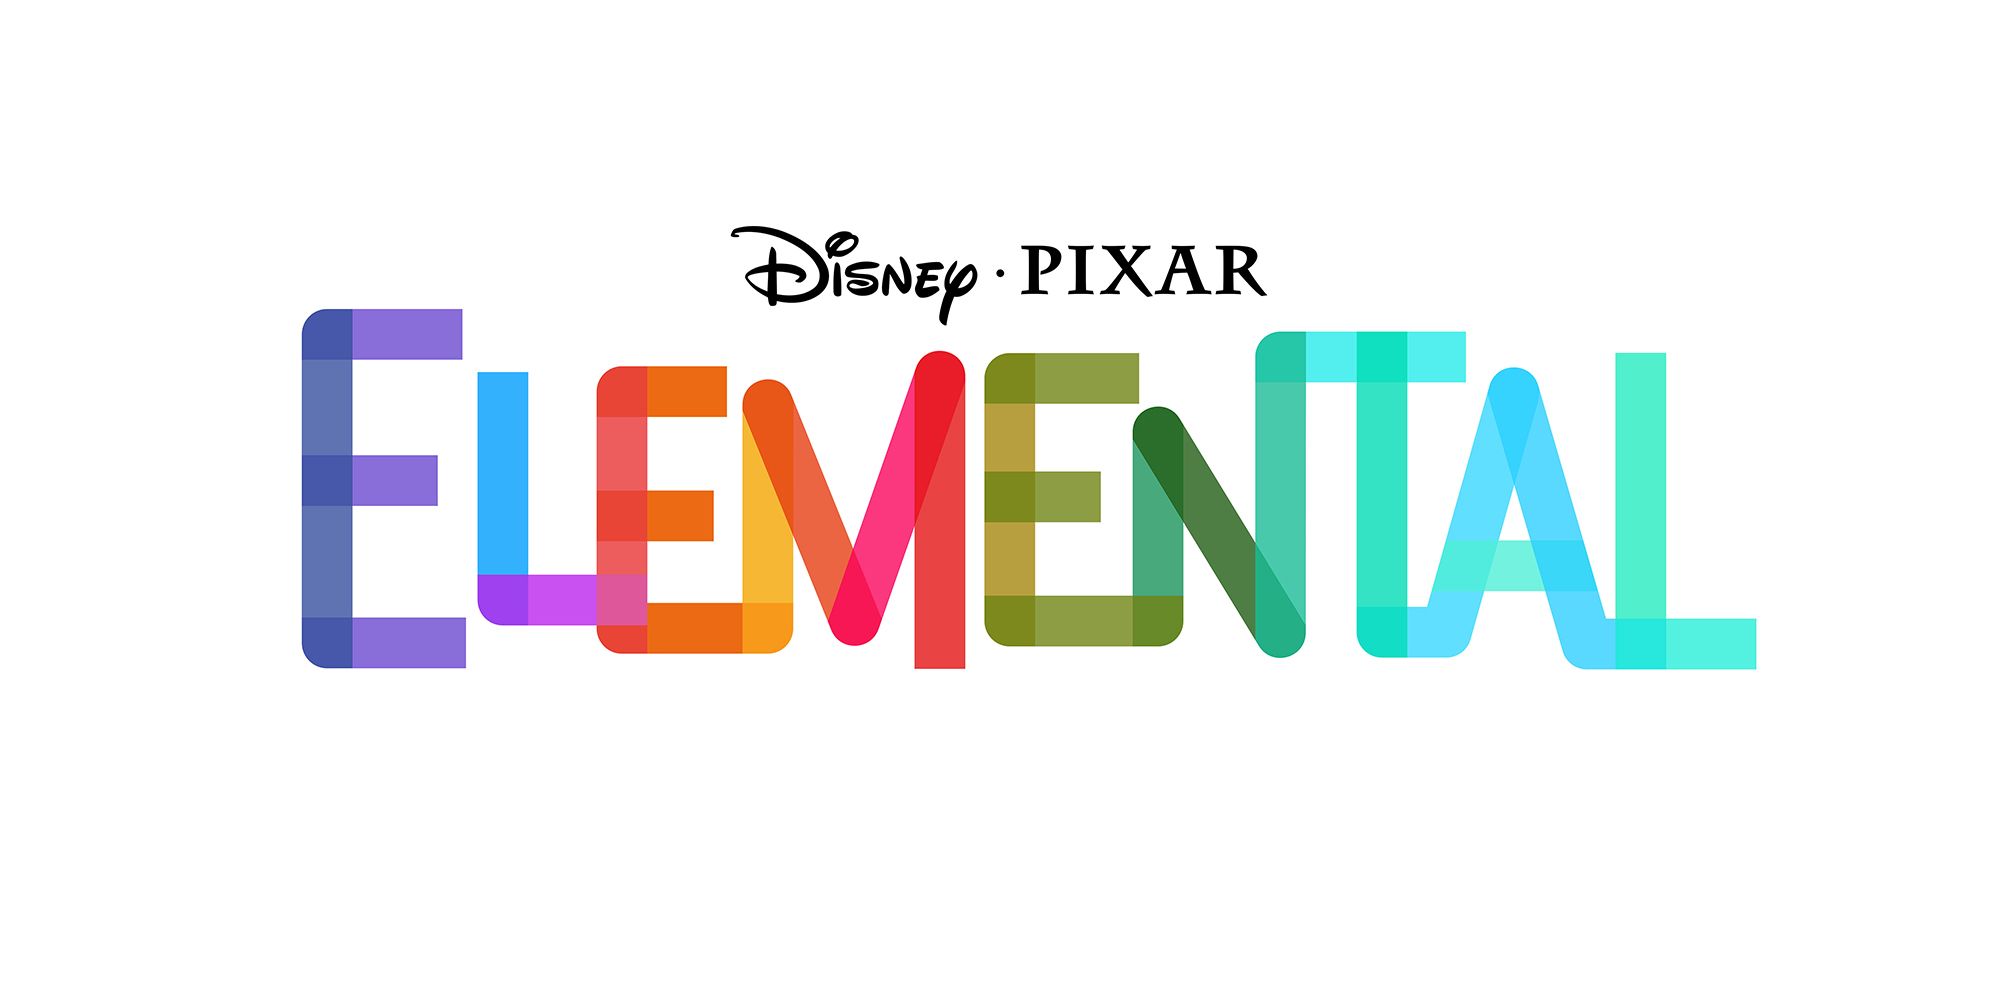 Pixar anunciou seu novo filme: Elemental! Em um mundo onde cidadãos de água,  fogo, terra e ar convivem em sociedade, um garoto de água e uma garota de  fogo vão descobrir que